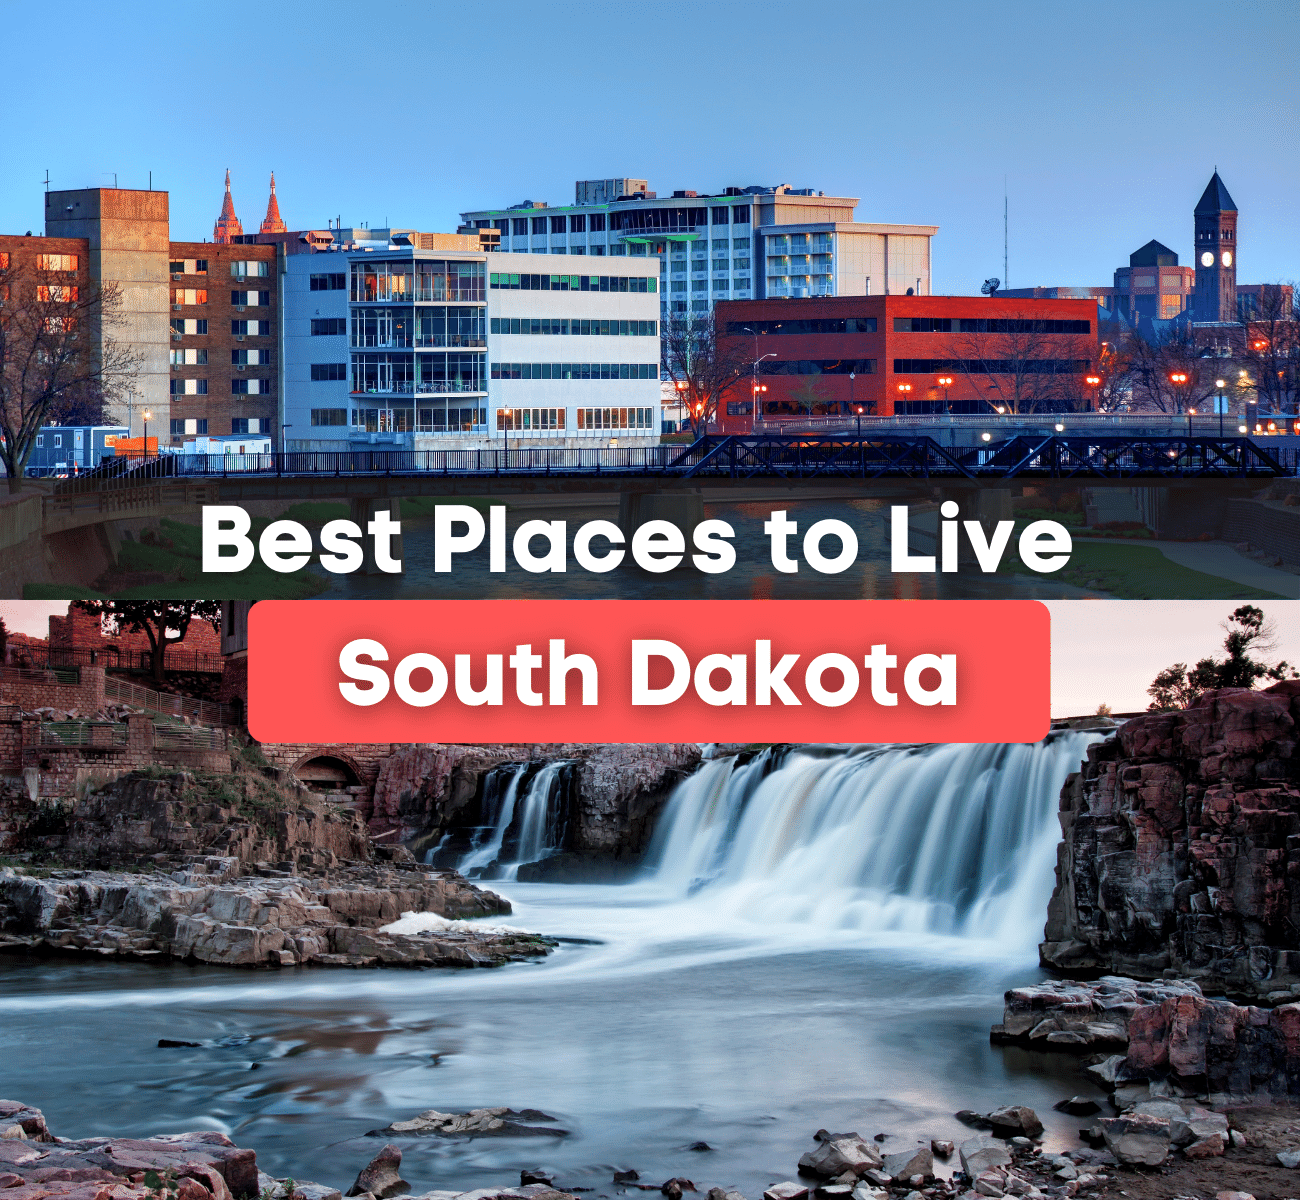 South Dakota city and waterfall